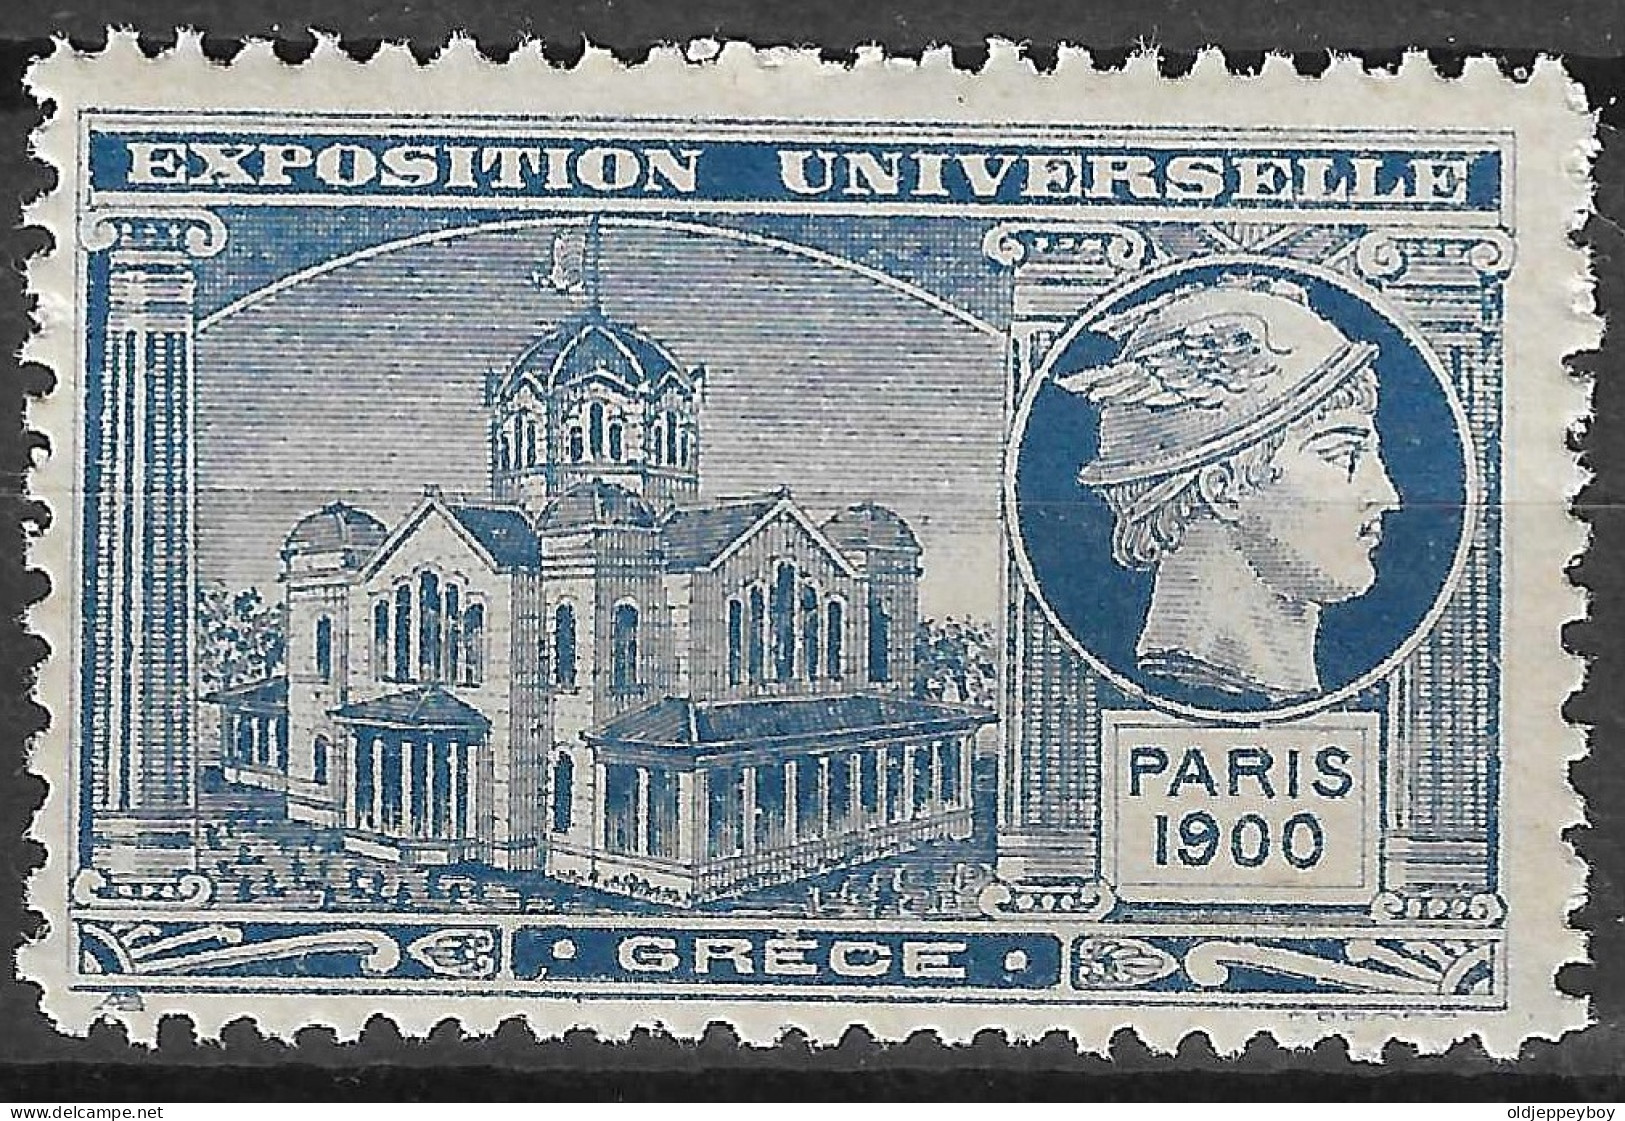 FRANCE ERINOPHILIE FAIR EXPOSITION UNIVERSELLE 1900 PARIS GRECE GREECE Vignette CINDERELLA MNH** - 1900 – Paris (France)